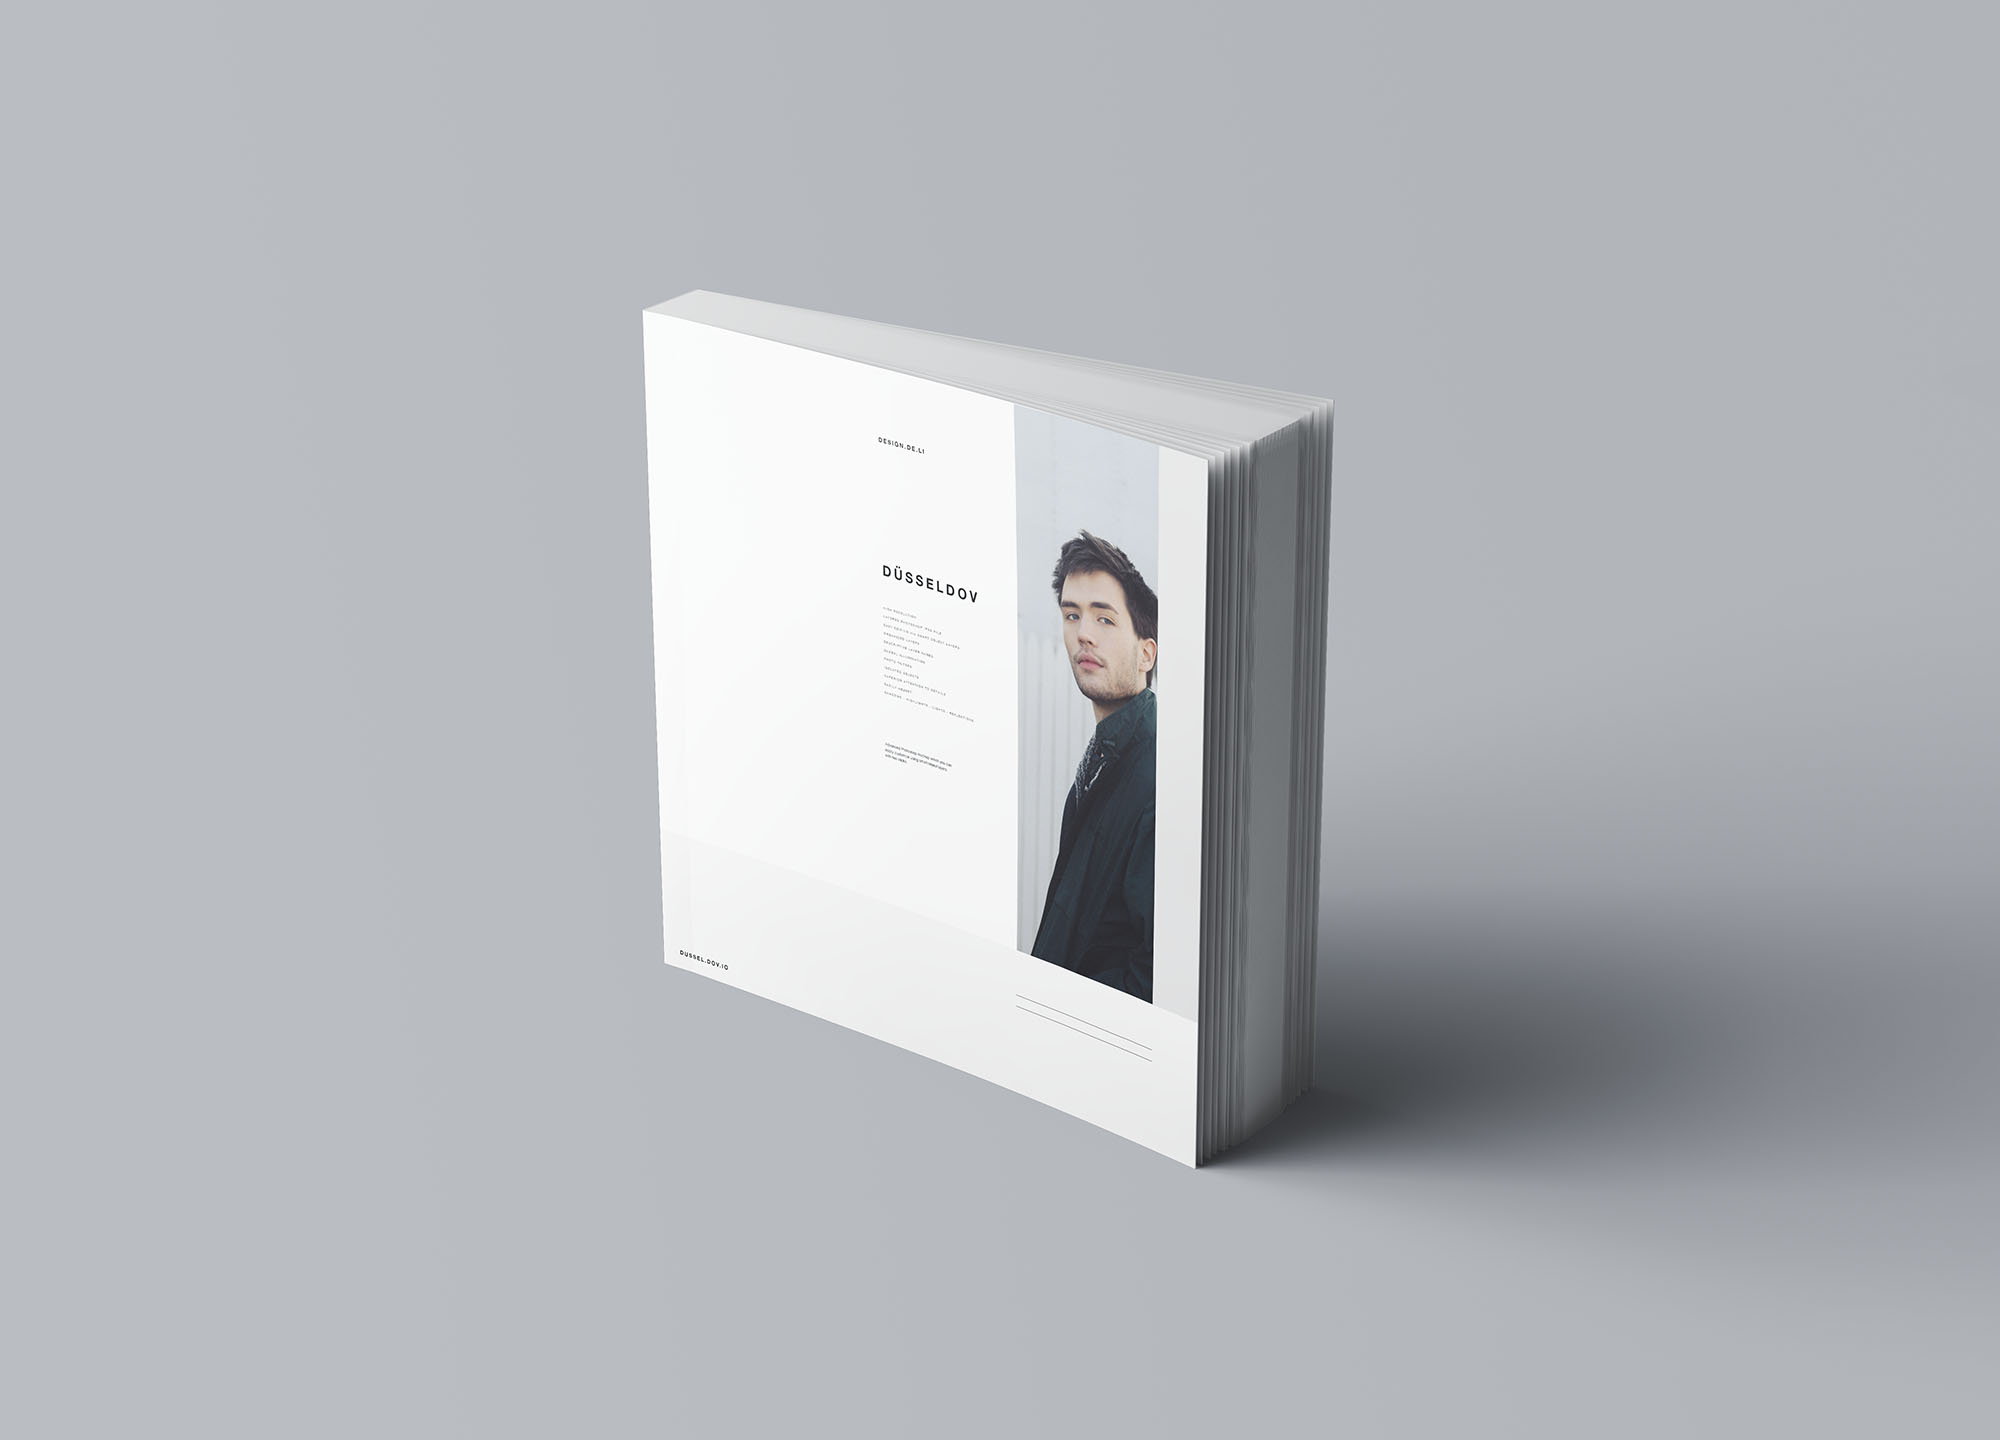 方形软封图书内页版式设计效果图样机第一素材精选 Square Softcover Book Mockup插图(6)